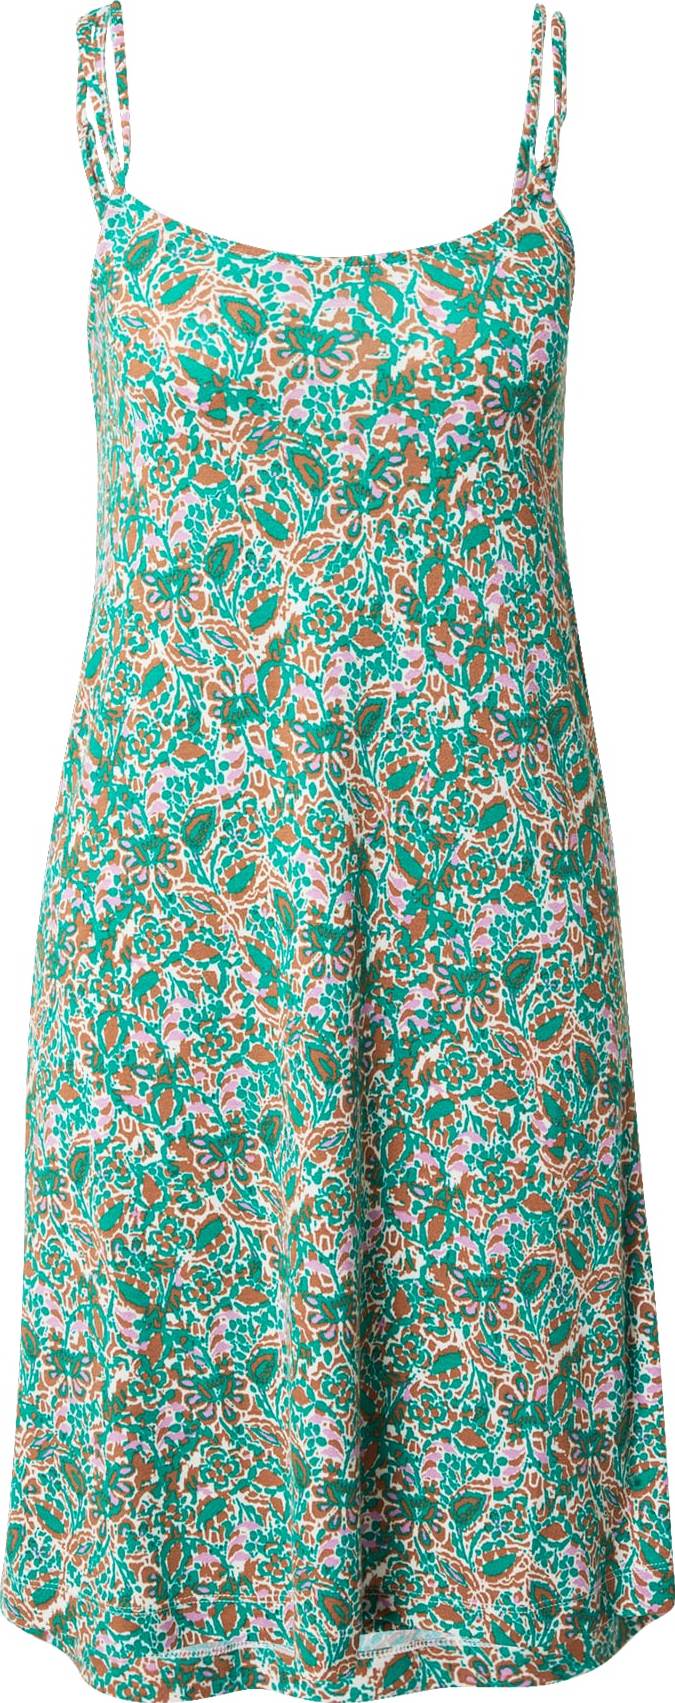 ESPRIT Letní šaty karamelová / zelená / světle růžová / bílá